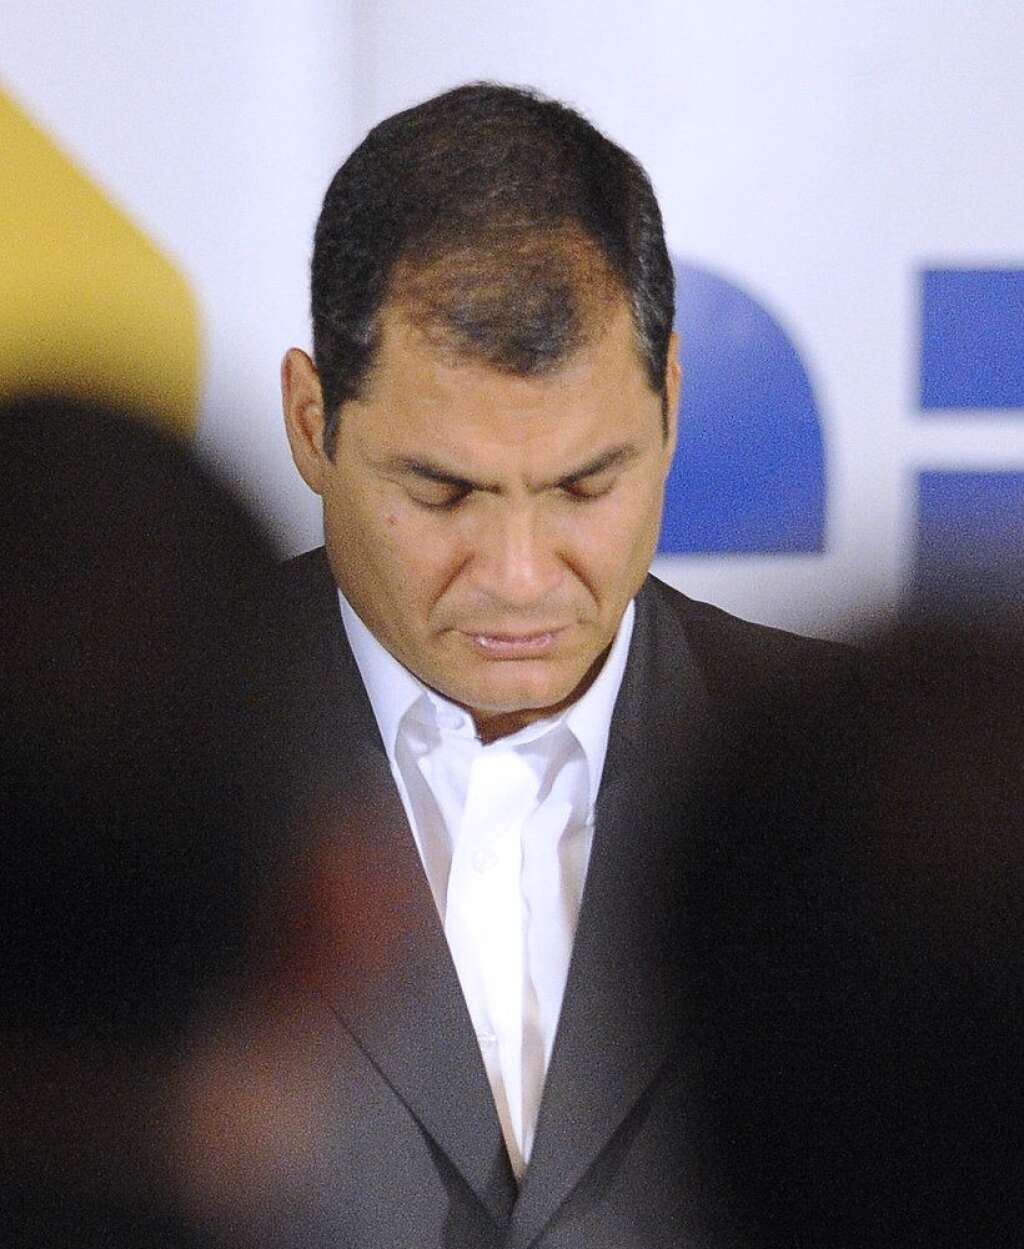 Rafael Correa (Équateur) - L'Equateur a qualifié la disparition du président vénézuélien Hugo, décédé mardi des suites d'un cancer, de "perte irréparable" pour l'Amérique latine, dans un communiqué publié par le ministère des Affaires étrangères à Quito.  Le gouvernement du président socialiste Rafael Correa, un proche allié du dirigeant vénézuélien, a fait part de son "profond chagrin" après l'annonce de sa mort, affirmant qu'il avait été le "chef de file d'un mouvement historique" et un "révolutionnaire mémorable".  "Devant cette perte irréparable qui endeuille le peuple vénézuélien et toute la région", l'Equateur exprime "son amitié spéciale qui l'unit au Venezuela", affirmant que l'action de M. Chavez permettra de continuer à "renforcer les liens entre les deux pays et l'intégration latino-américaine".  "L'Equateur considère cette perte comme la sienne propre et souhaite au peuple ami du Venezuela les plus grands succès à l'avenir, avec la conviction qu'il saura maintenir et magnifier son histoire, sa révolution, son développement, la fraternité et la solidarité qui caractérise son action", ajoute le communiqué.